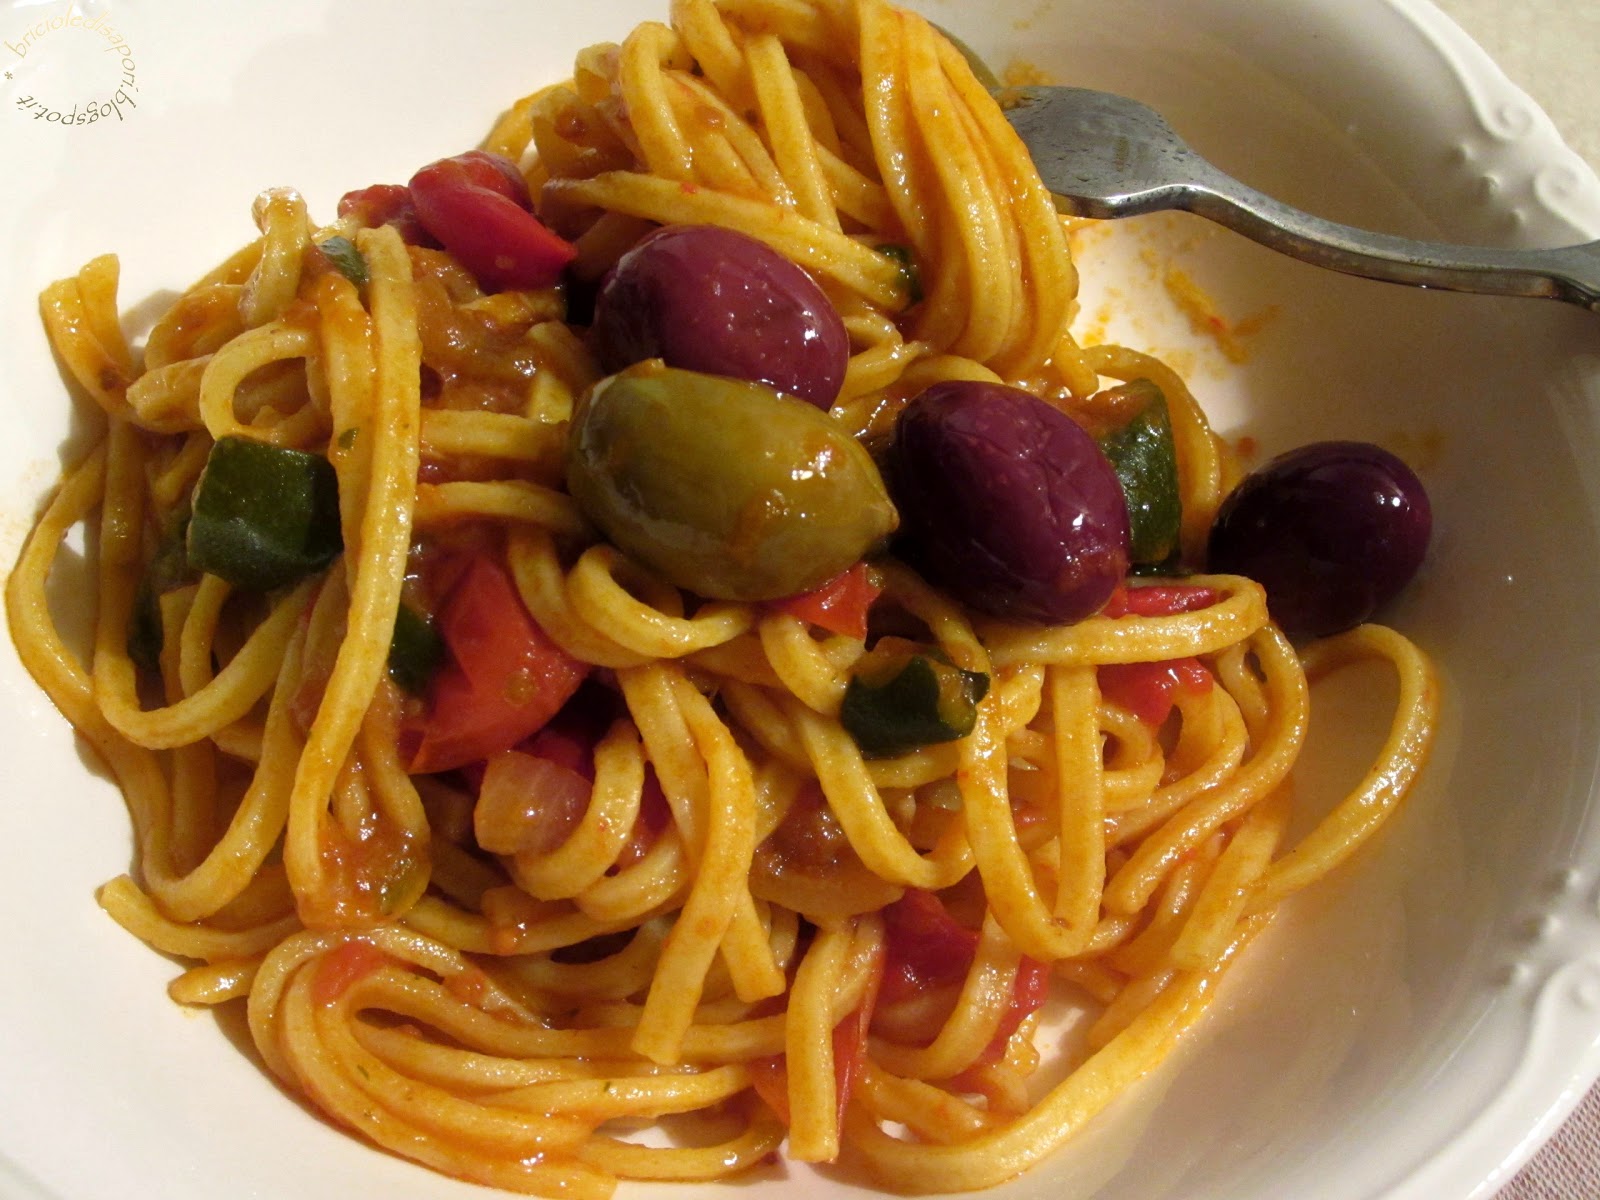 Bigoli con caponata di verdure, olive miste piccanti e ricotta stagionata... Un piatto tipicamente mediterraneo